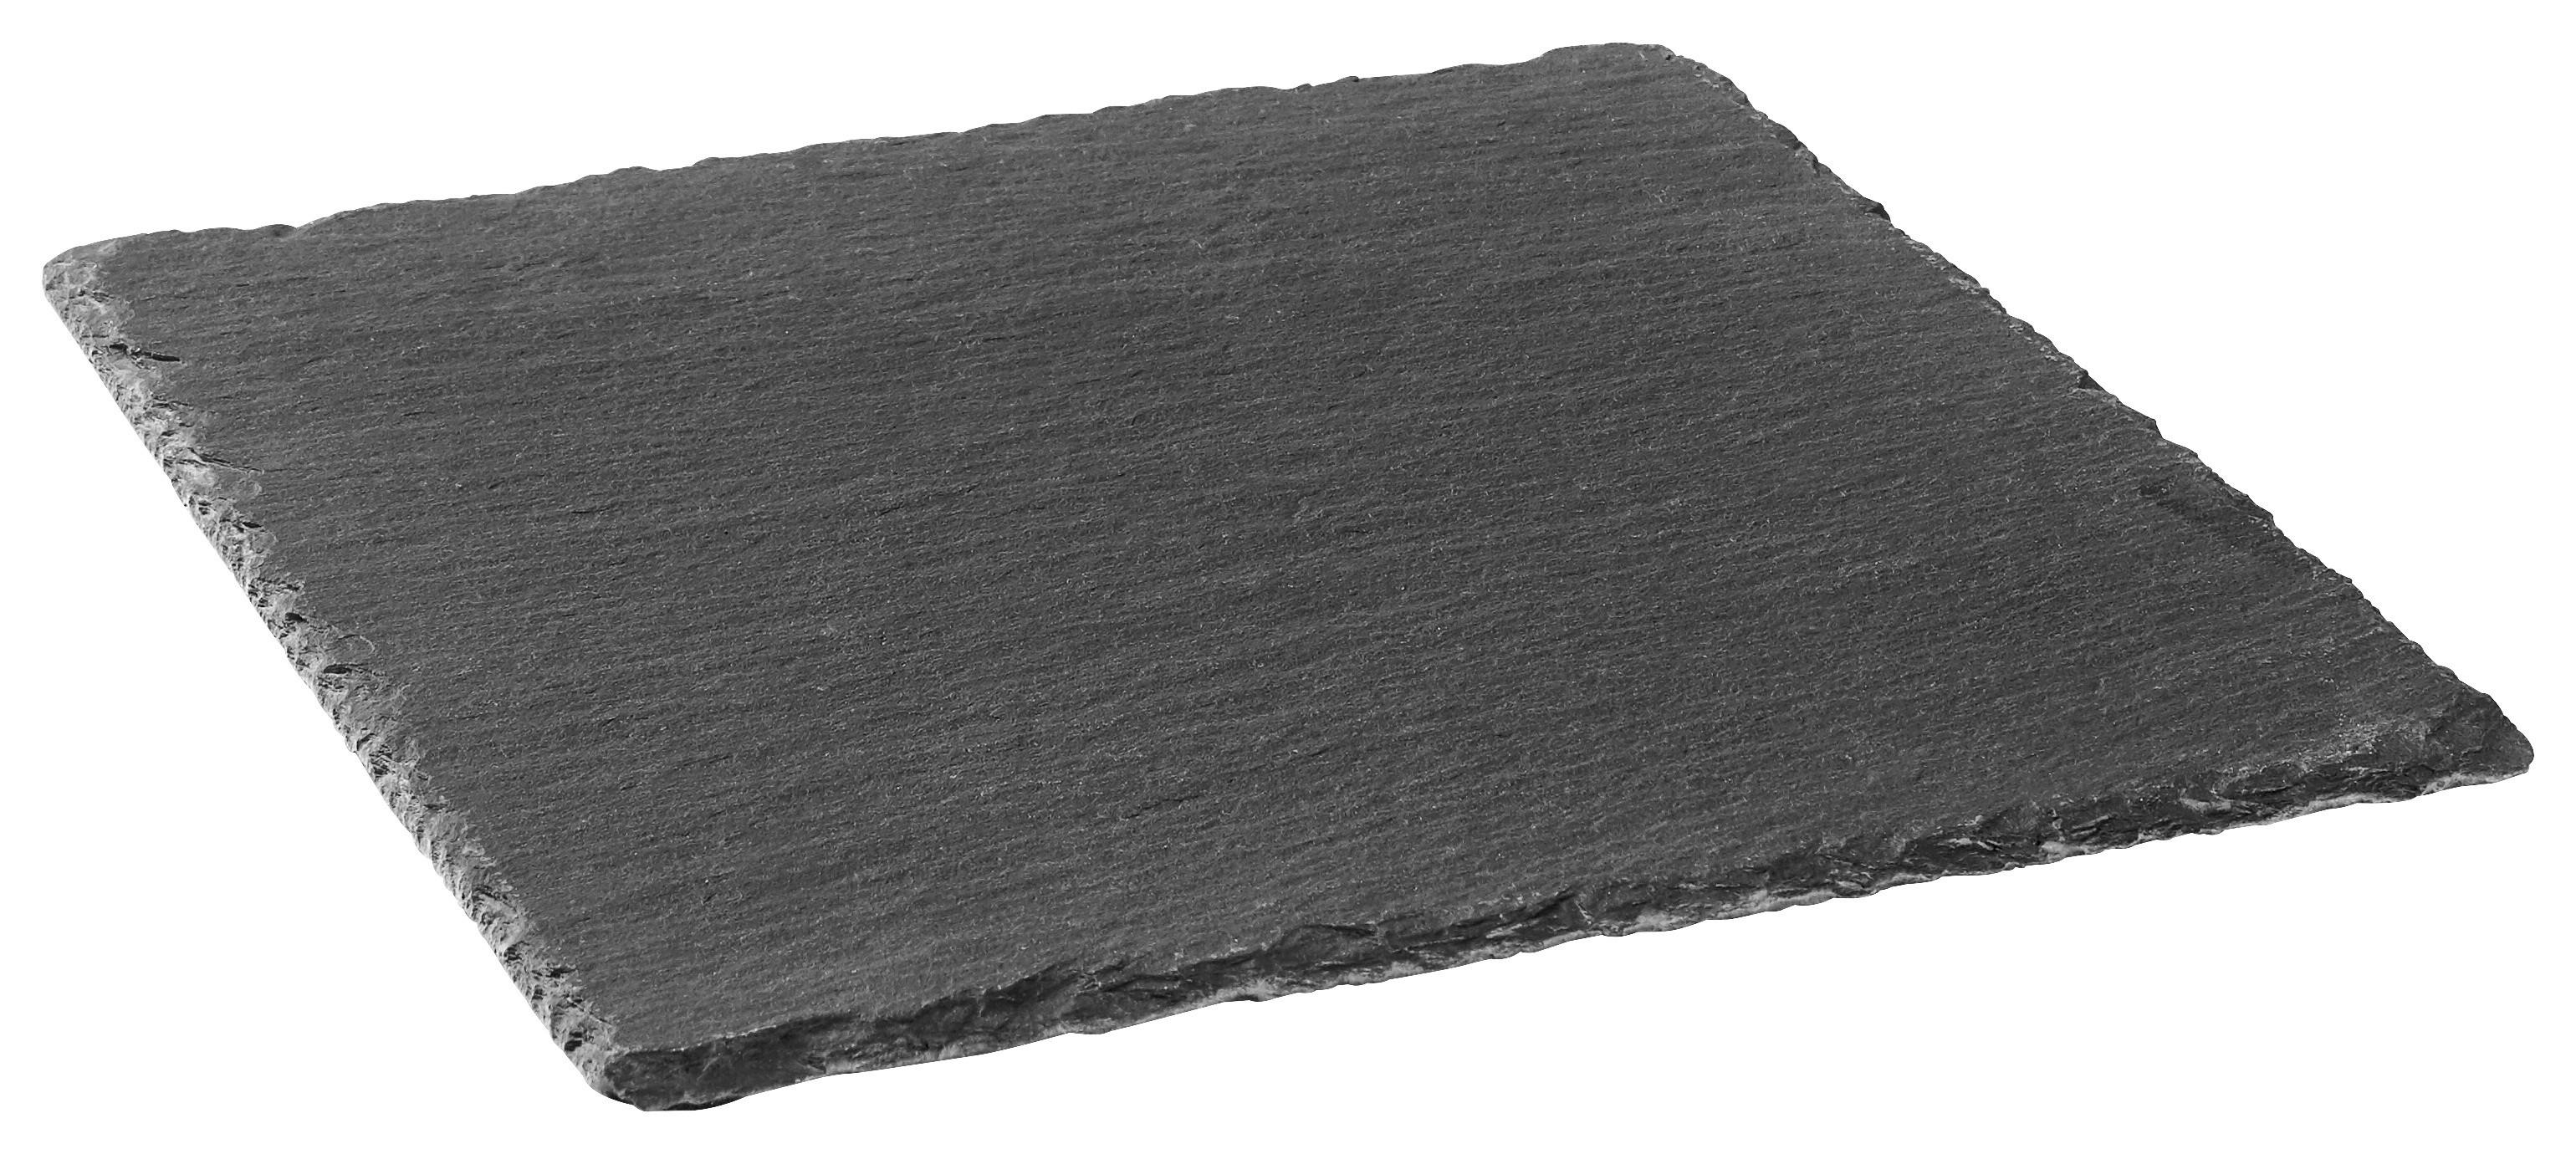 Servierplatte Stoney in Schwarz - Schwarz, MODERN, Kunststoff/Stein (20/20/0,7cm) - Zandiara